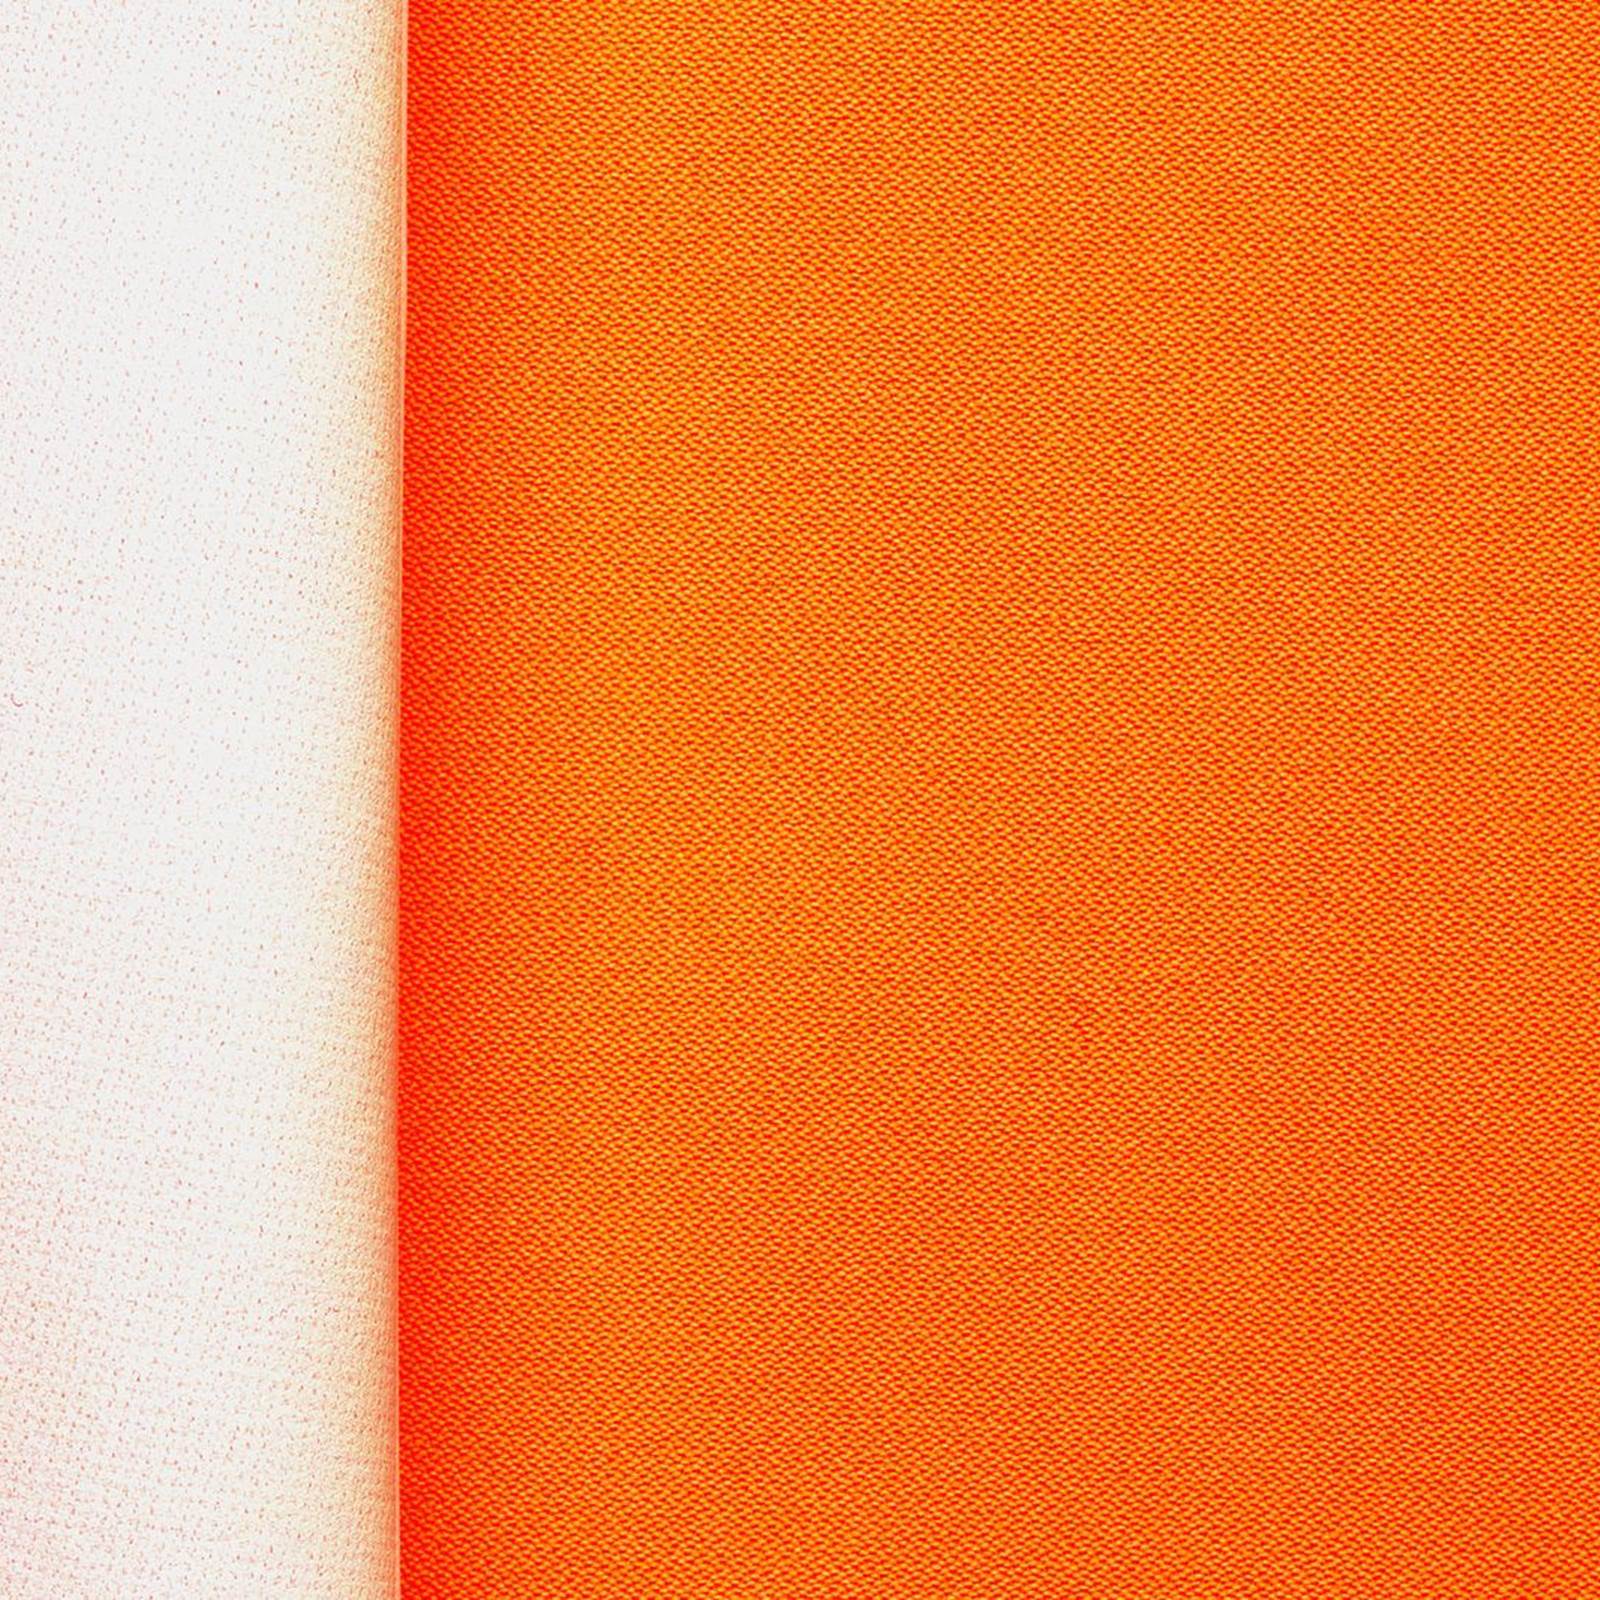 "Greta" - Tessuto esterno in laminato - antivento impermeabile e traspirante - Arancione neon